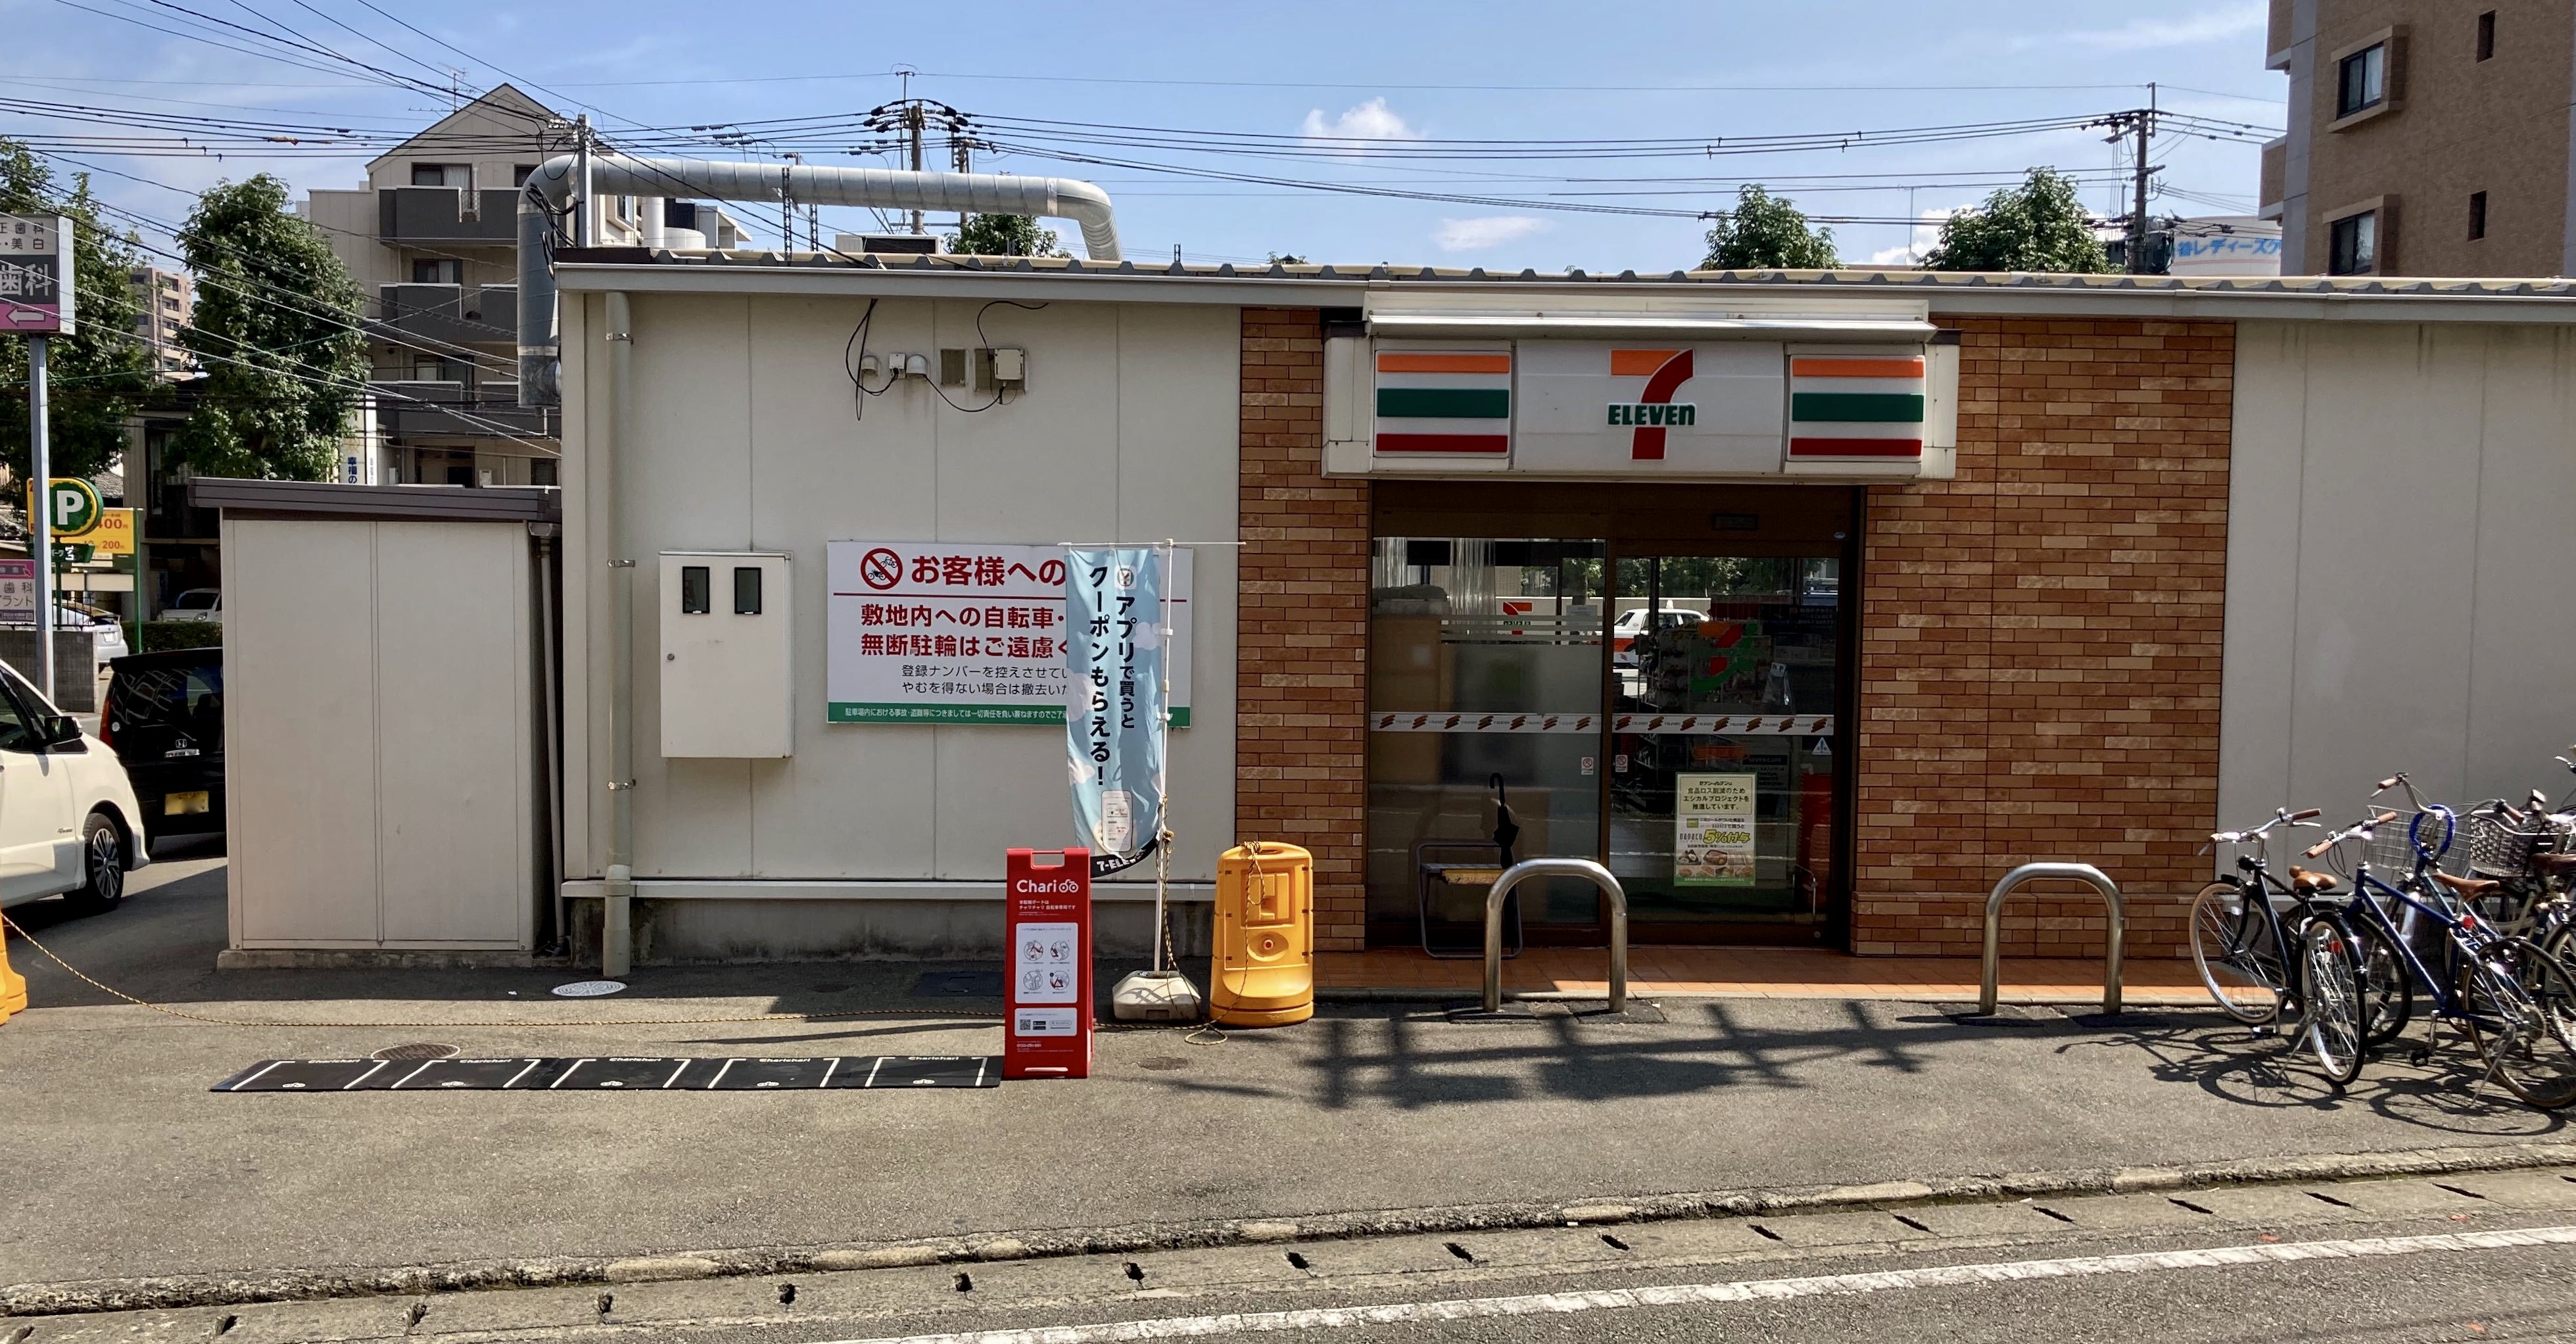 セブンイレブン福岡高宮駅前店 Charichari(チャリチャリ)の施設画像1